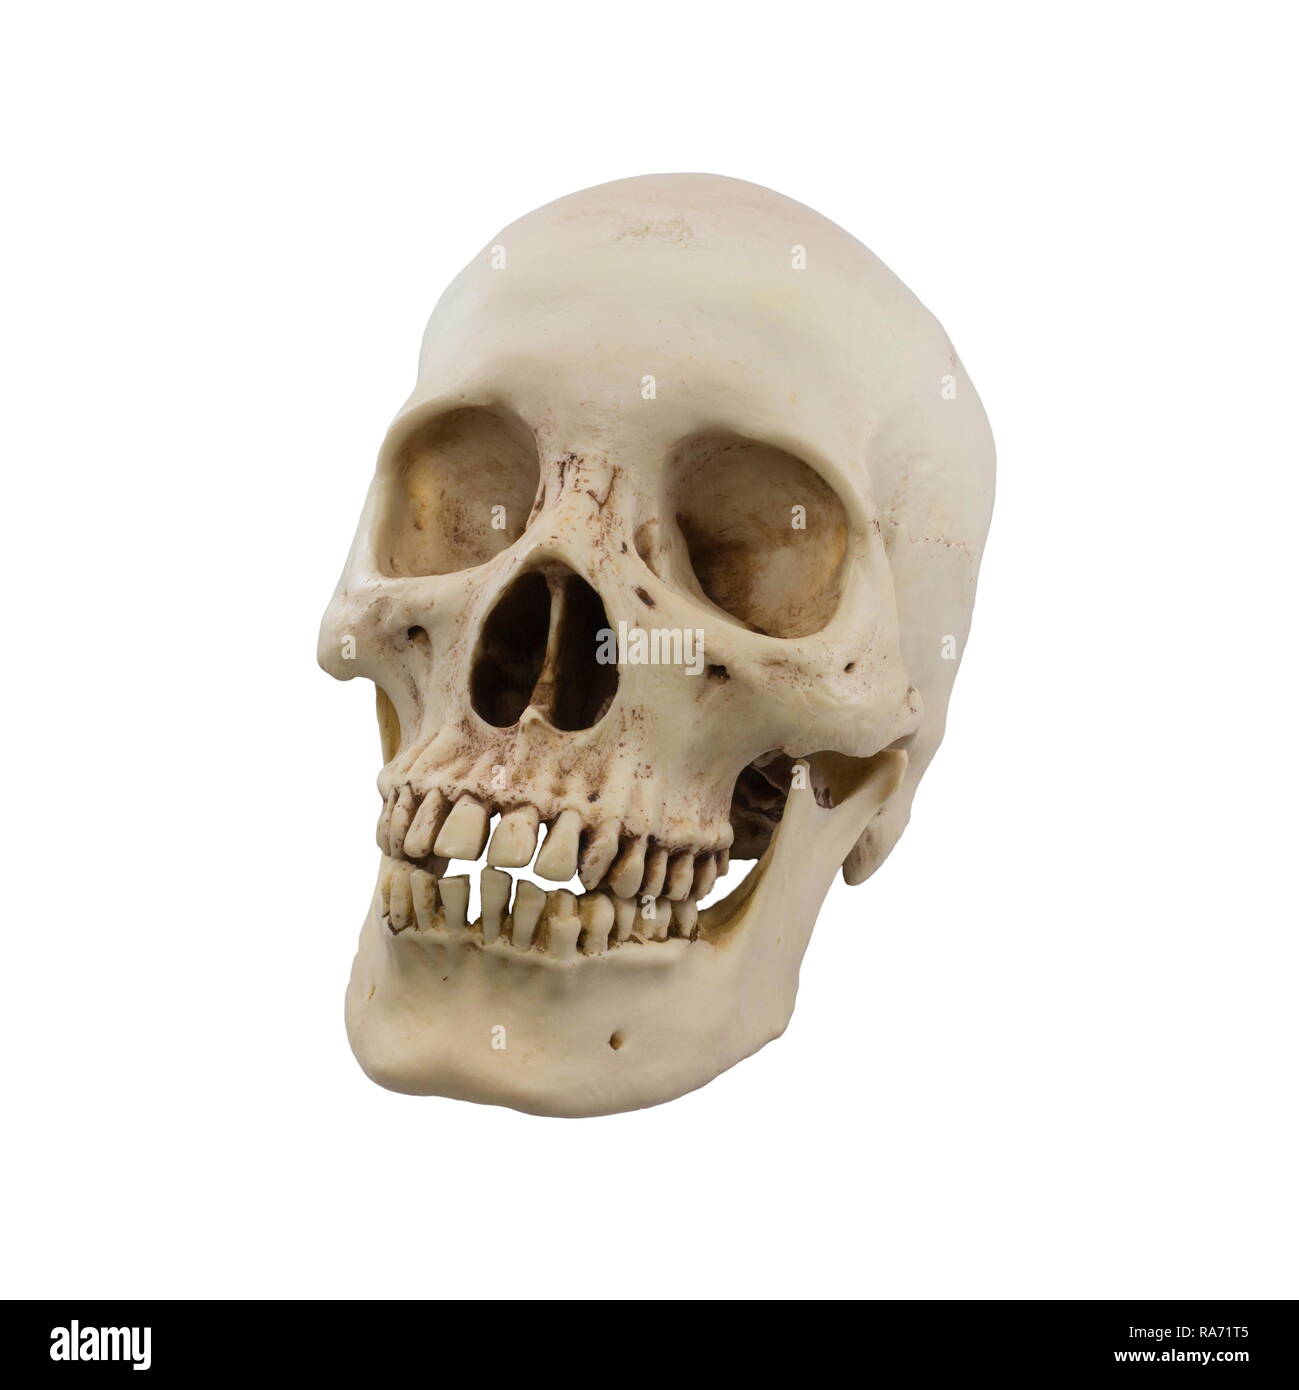 Echte menschliche Schädel auf einem weißen Hintergrund Stockfotografie -  Alamy